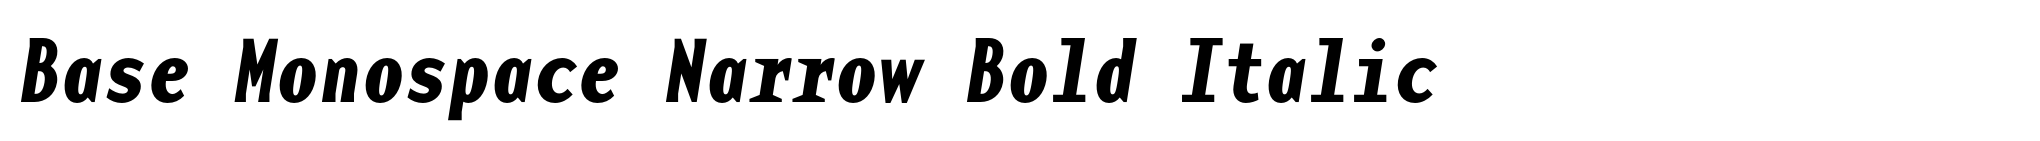 Base Monospace Narrow Bold Italic image